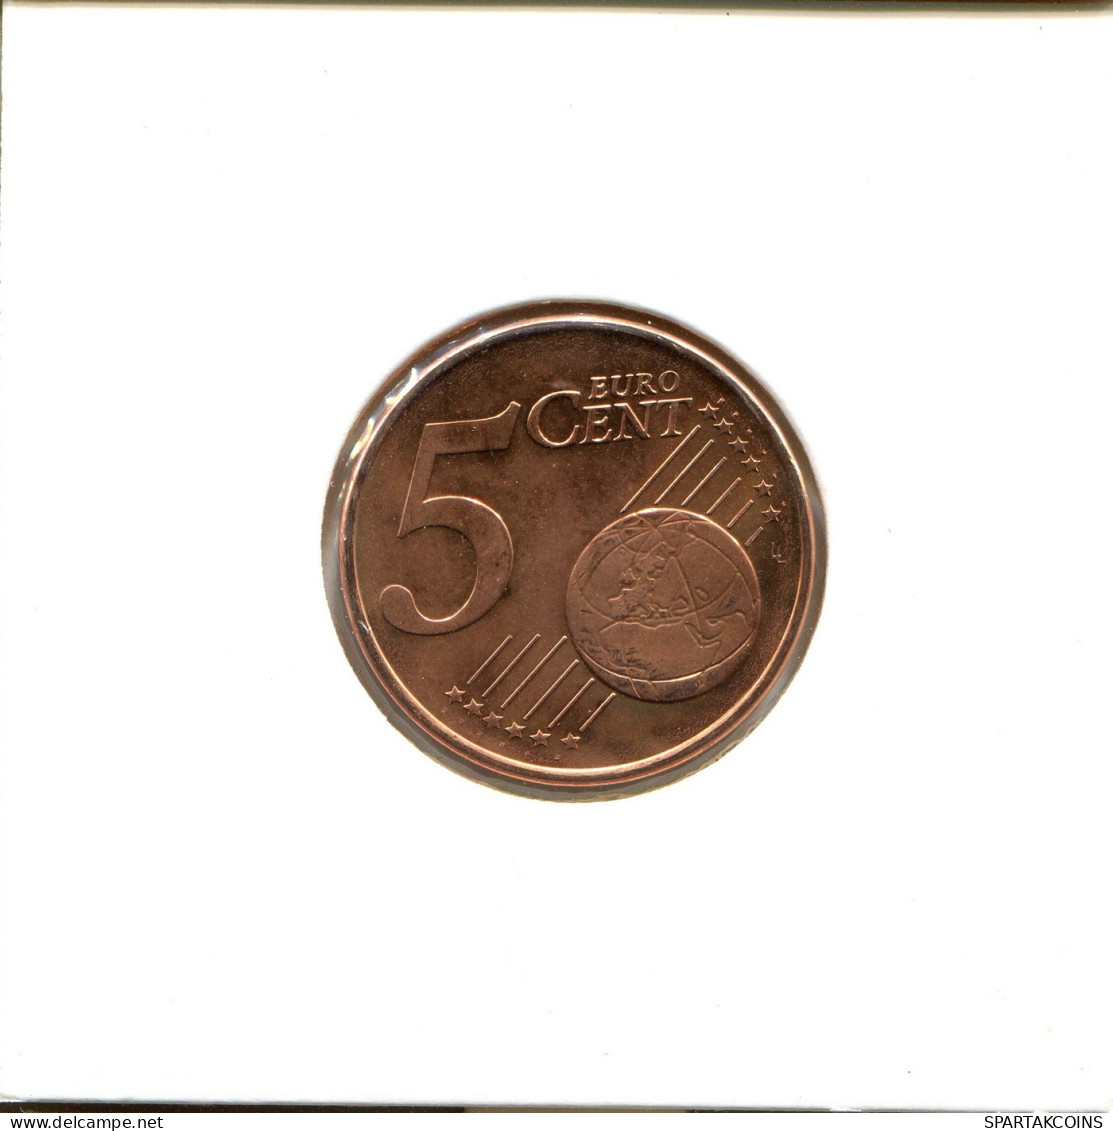 5 EURO CENTS 2010 GRECIA GREECE Moneda #EU498.E.A - Griechenland